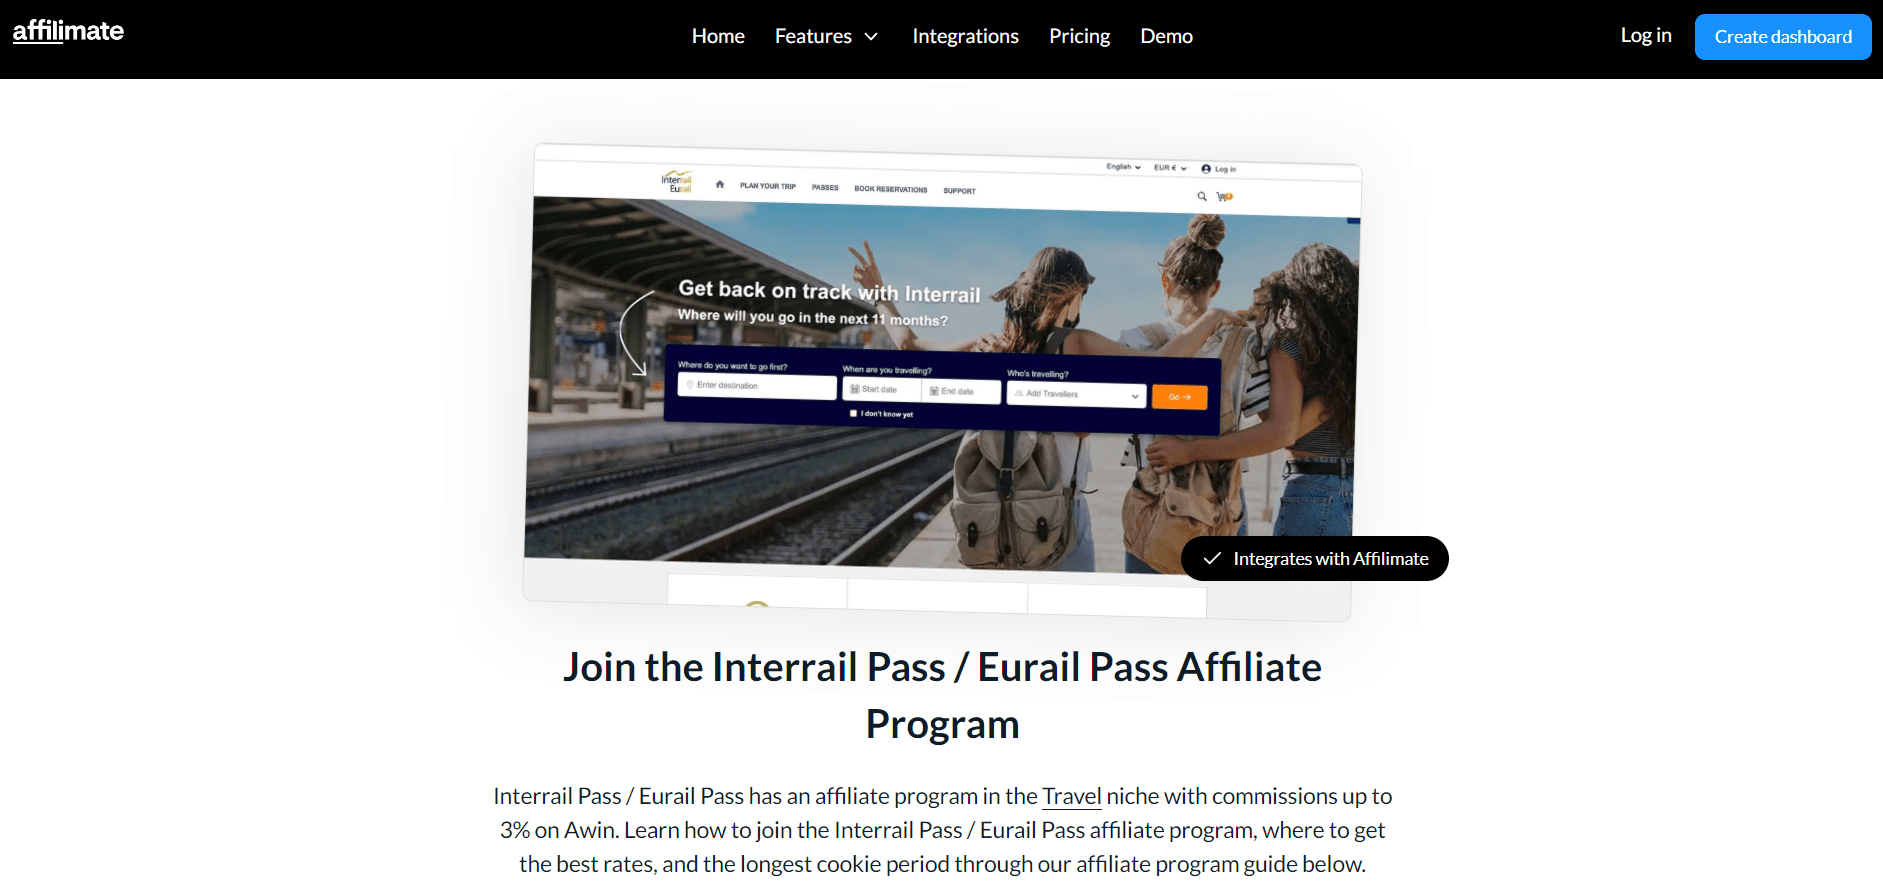 Interrail Pass - Eurail Pass Overview